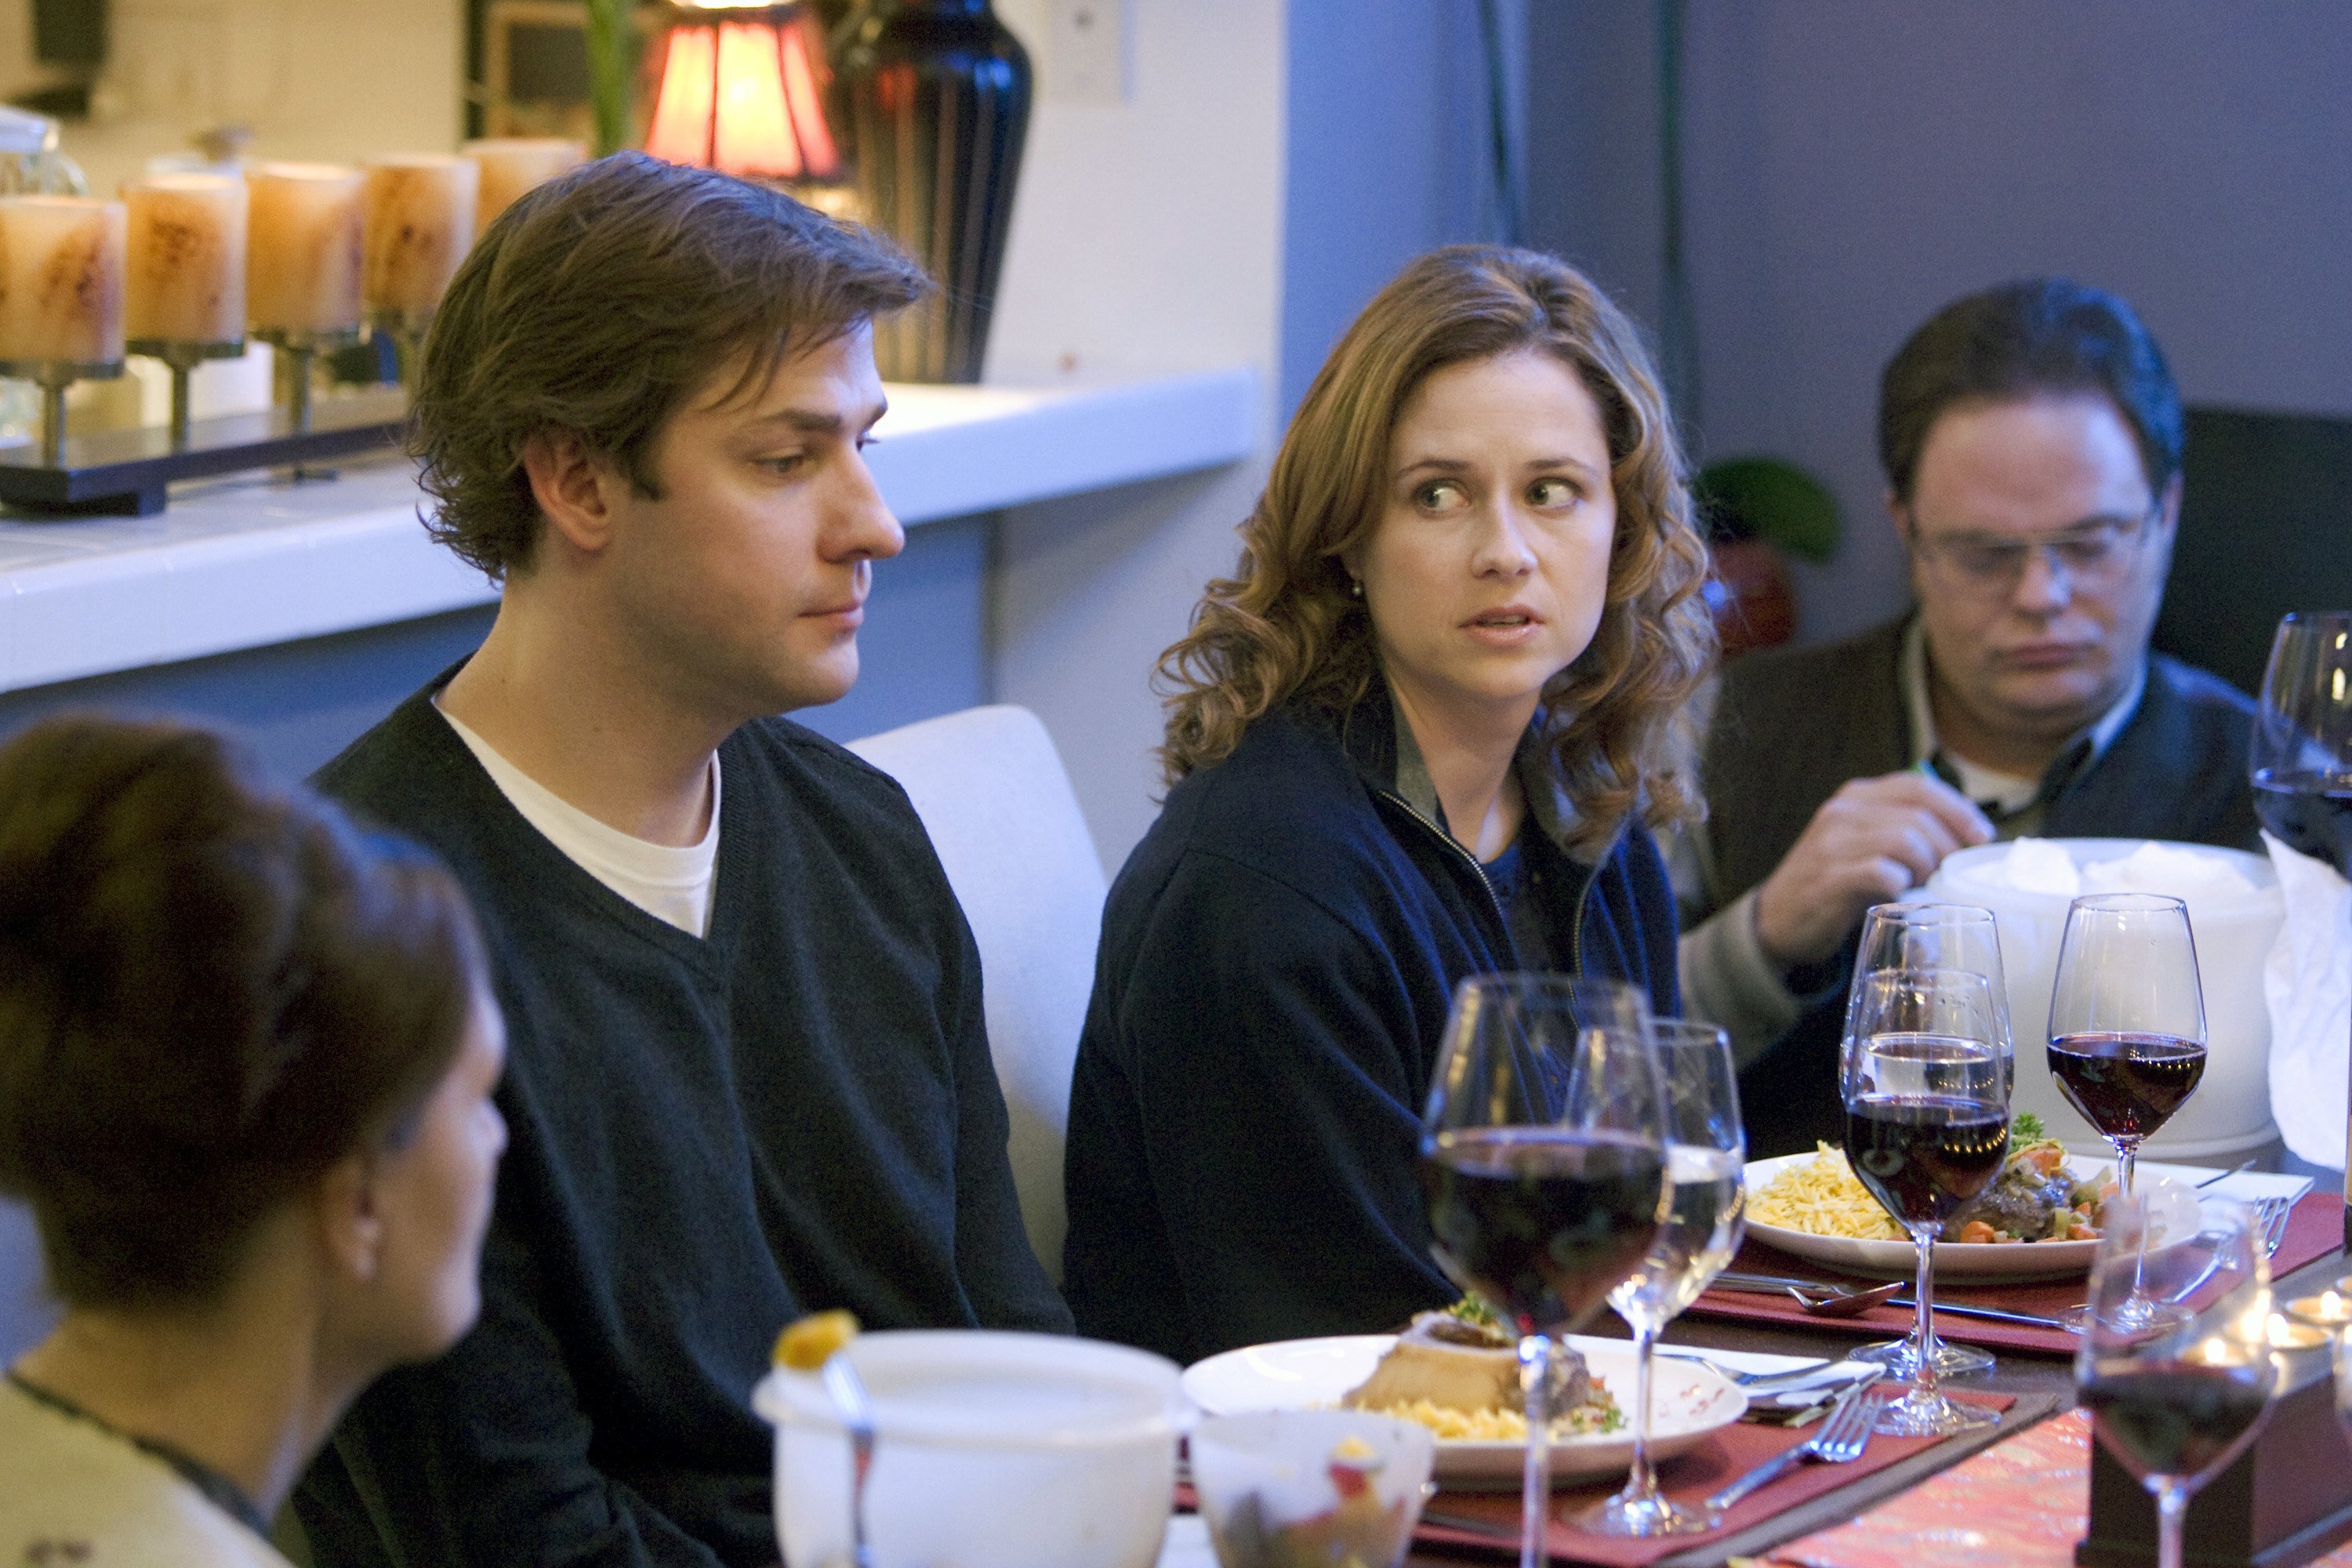 John Krasinski as Jim Halpert, Jenna Fischer as Pam Beesly, Rainn Wilson as Dwight Schrute at the dining room table in 'The Office' episode 'The Dinner Party'